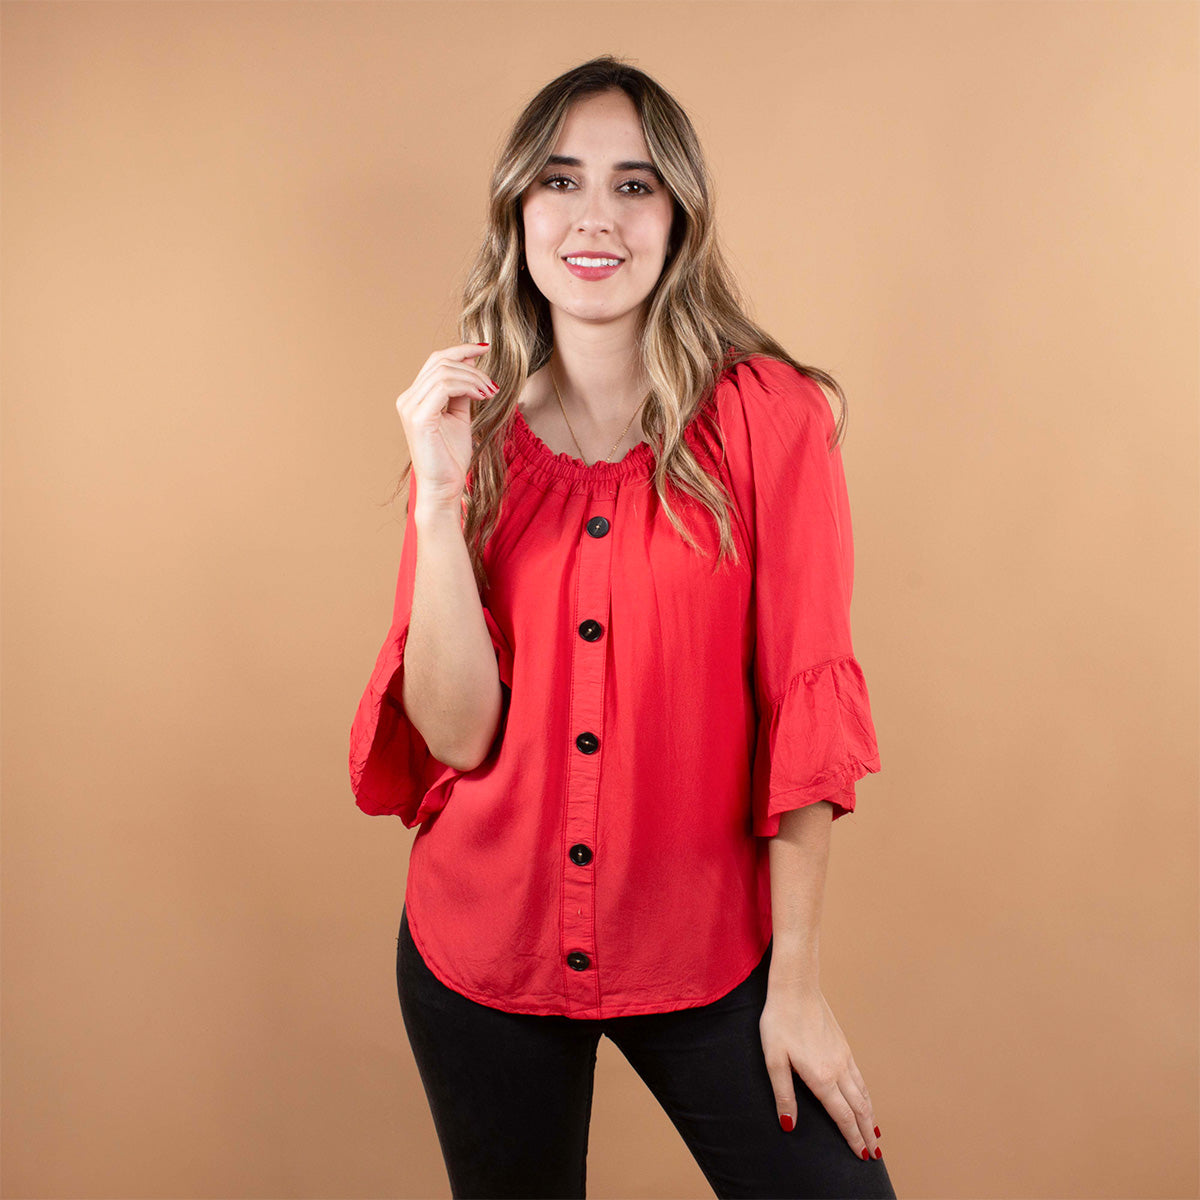 Blusa color rojo con botones y manga larga